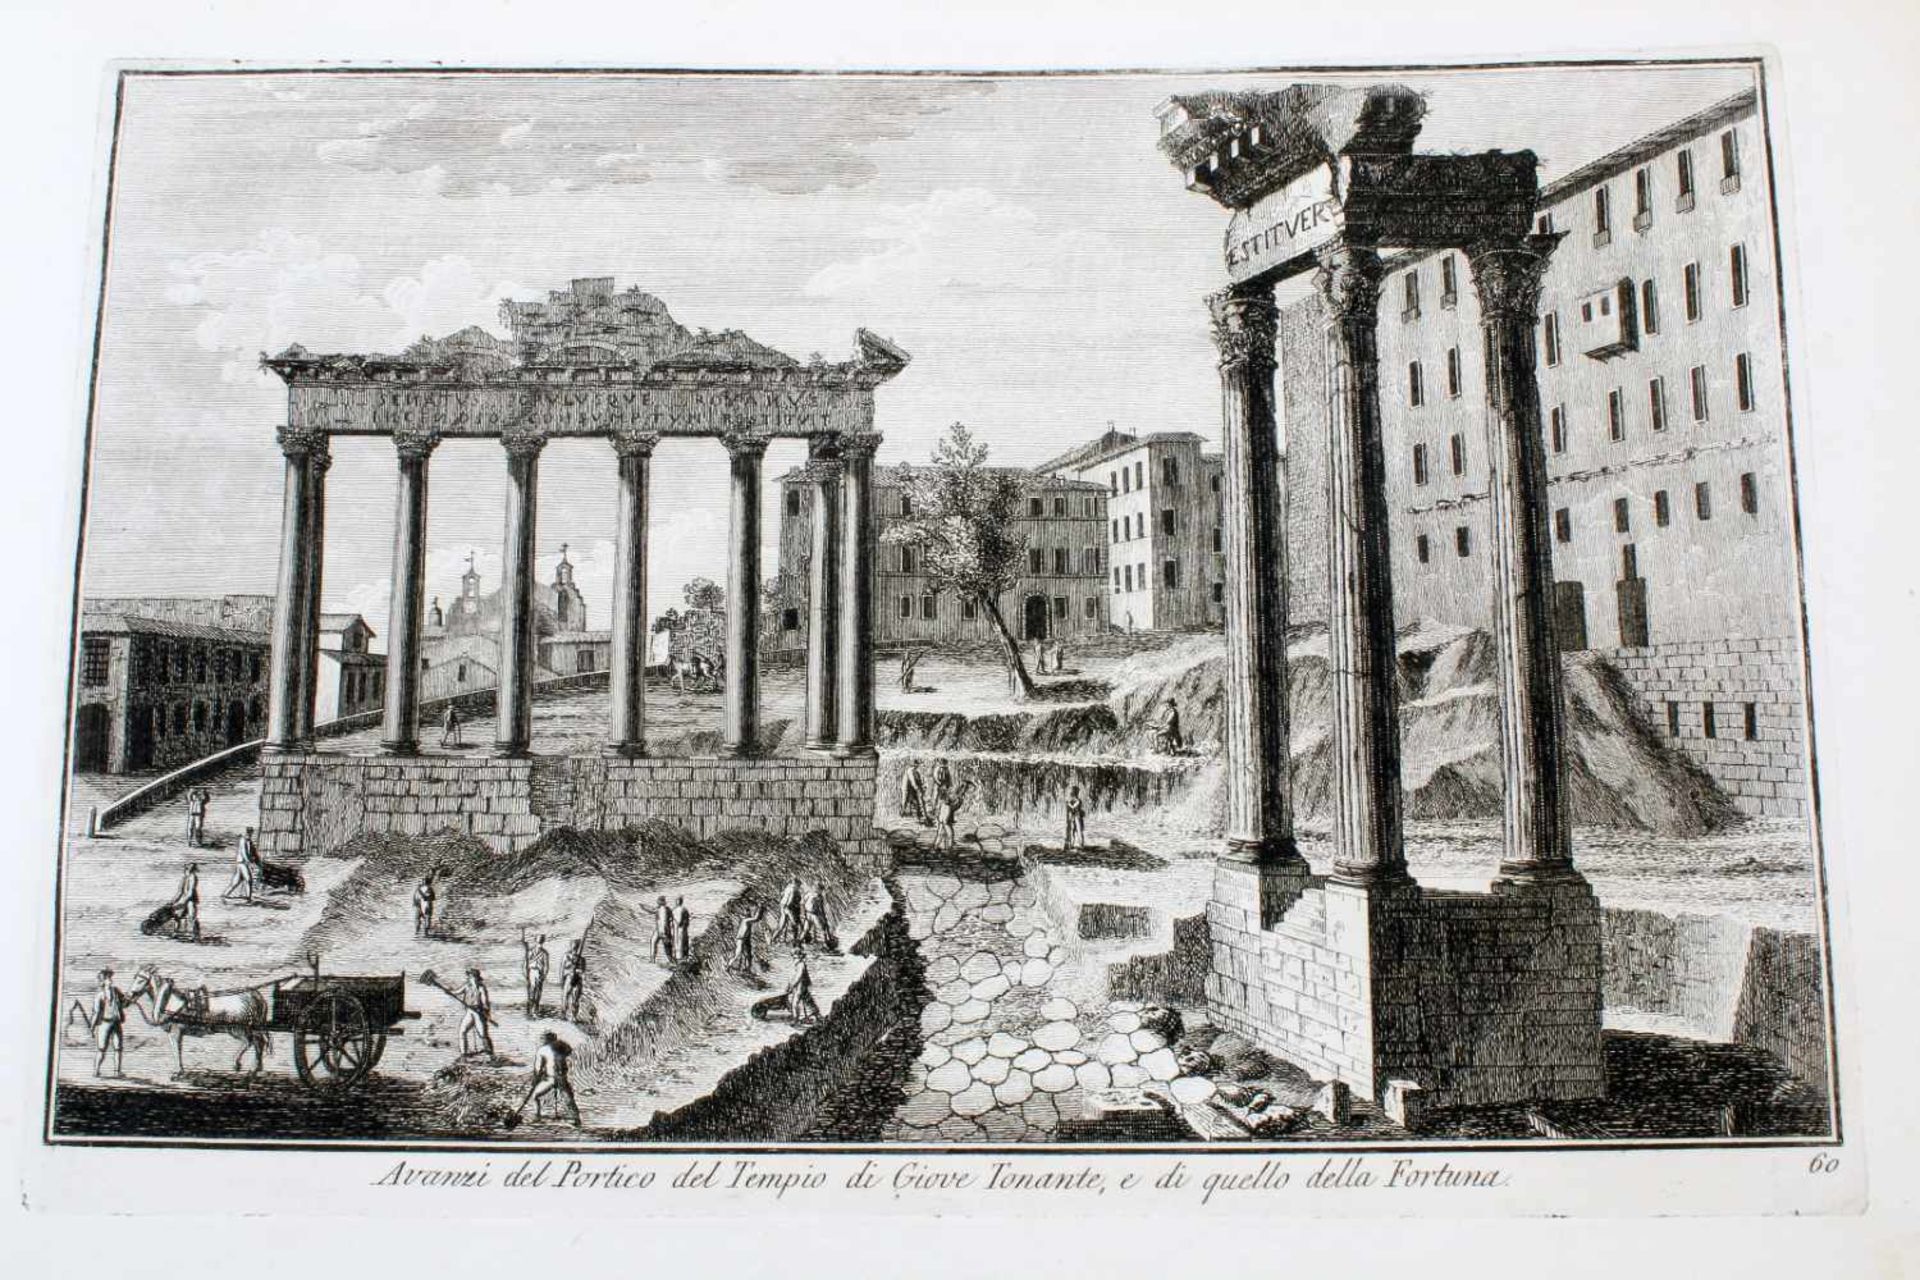 Roma - 64 Originalradierungen Ansichten von Rom - Giuseppe Vasi (1710 - 1782)Die Radierungen sind - Bild 26 aus 69